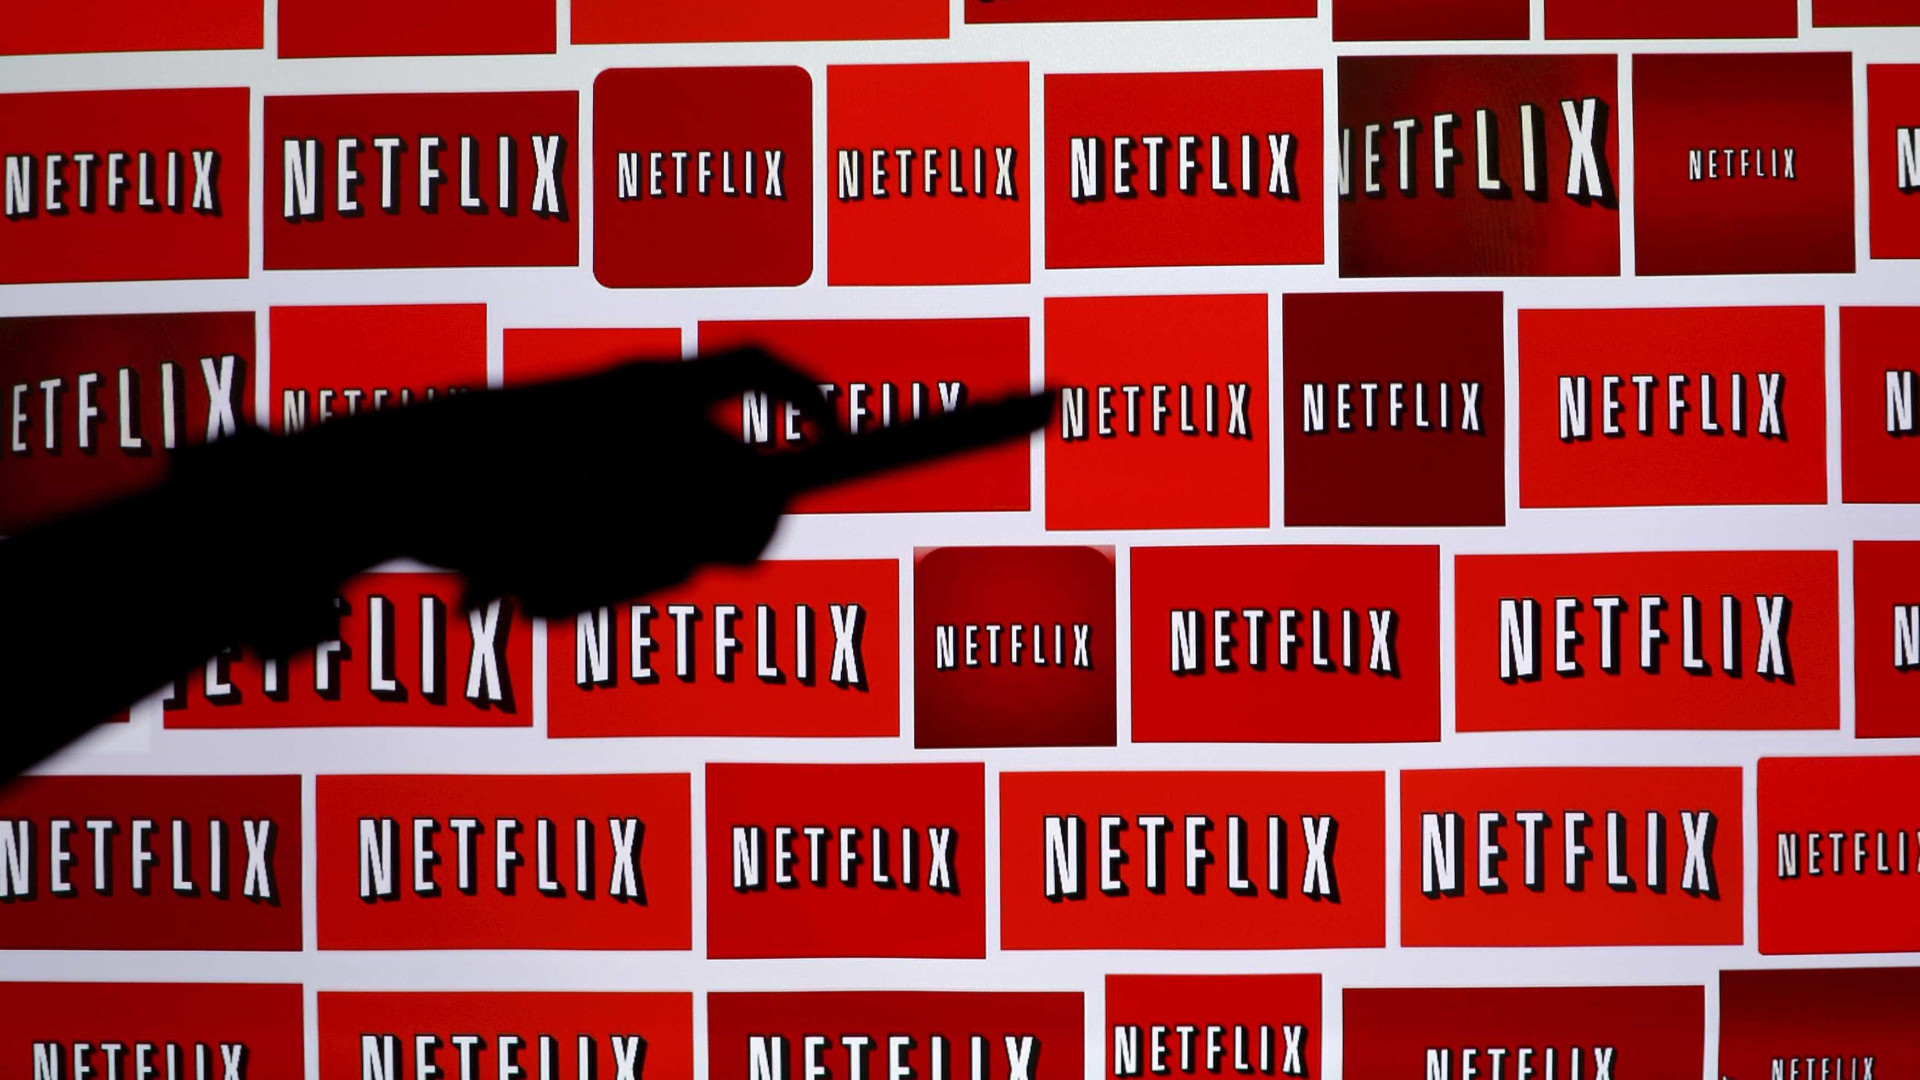 Netflix quer produzir ao menos 10 séries brasileiras por ano até 2020
